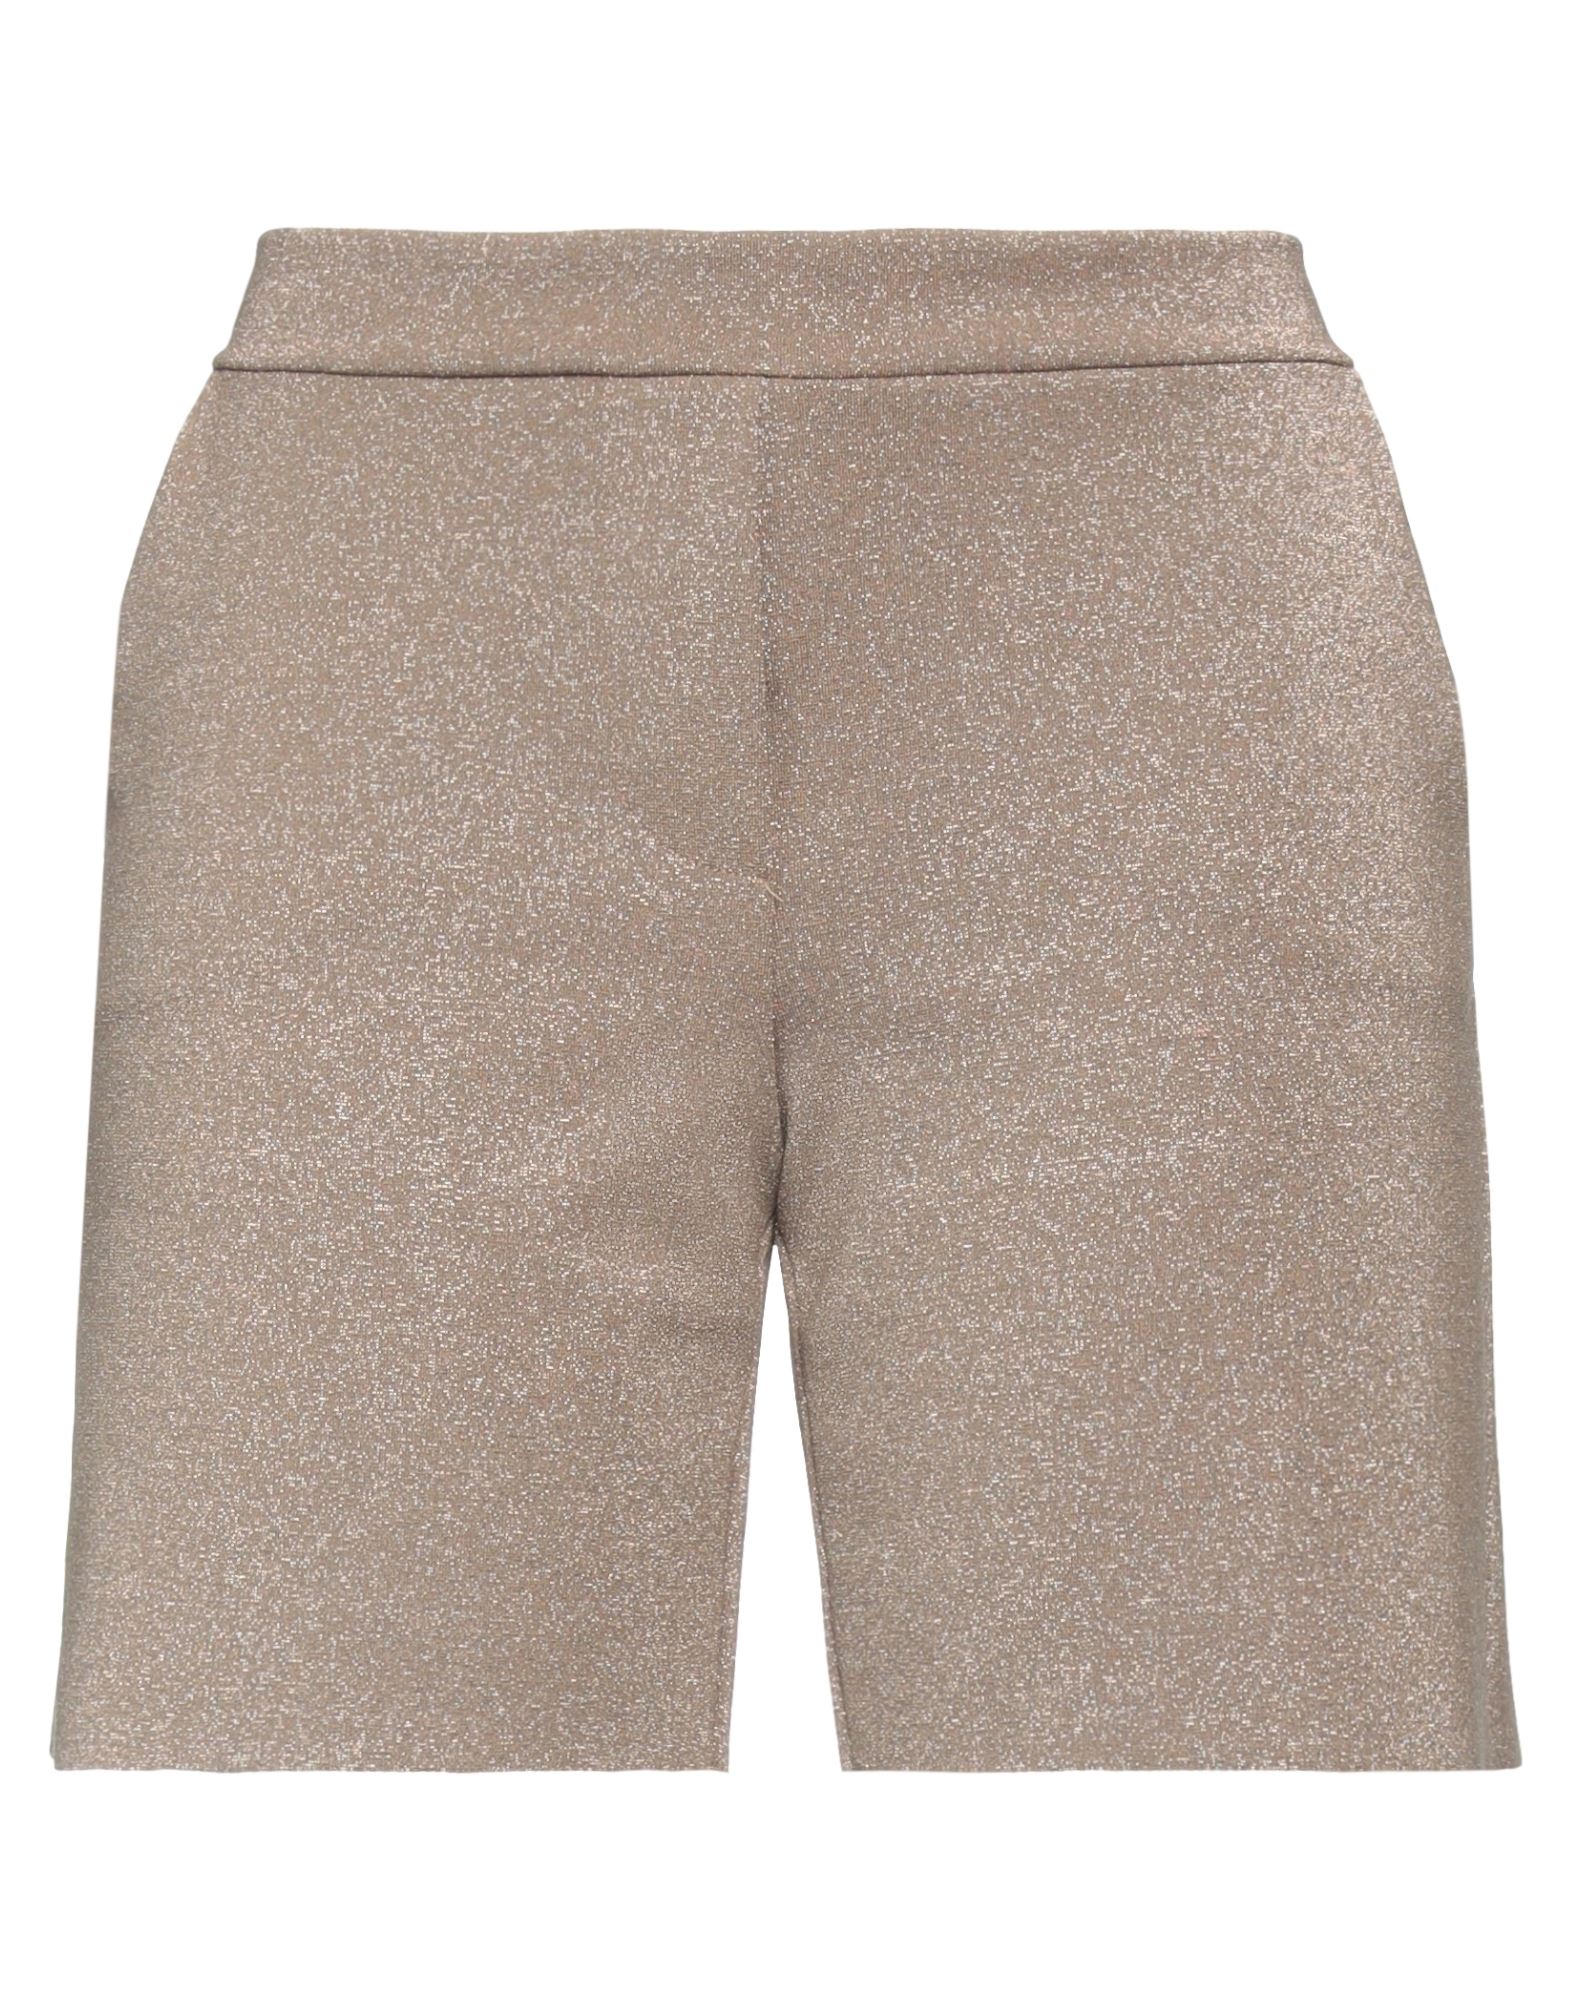 Chiara Boni La Petite Robe Woman Shorts & Bermuda Shorts Khaki Size Xs Polyamide, Elastane In Beige